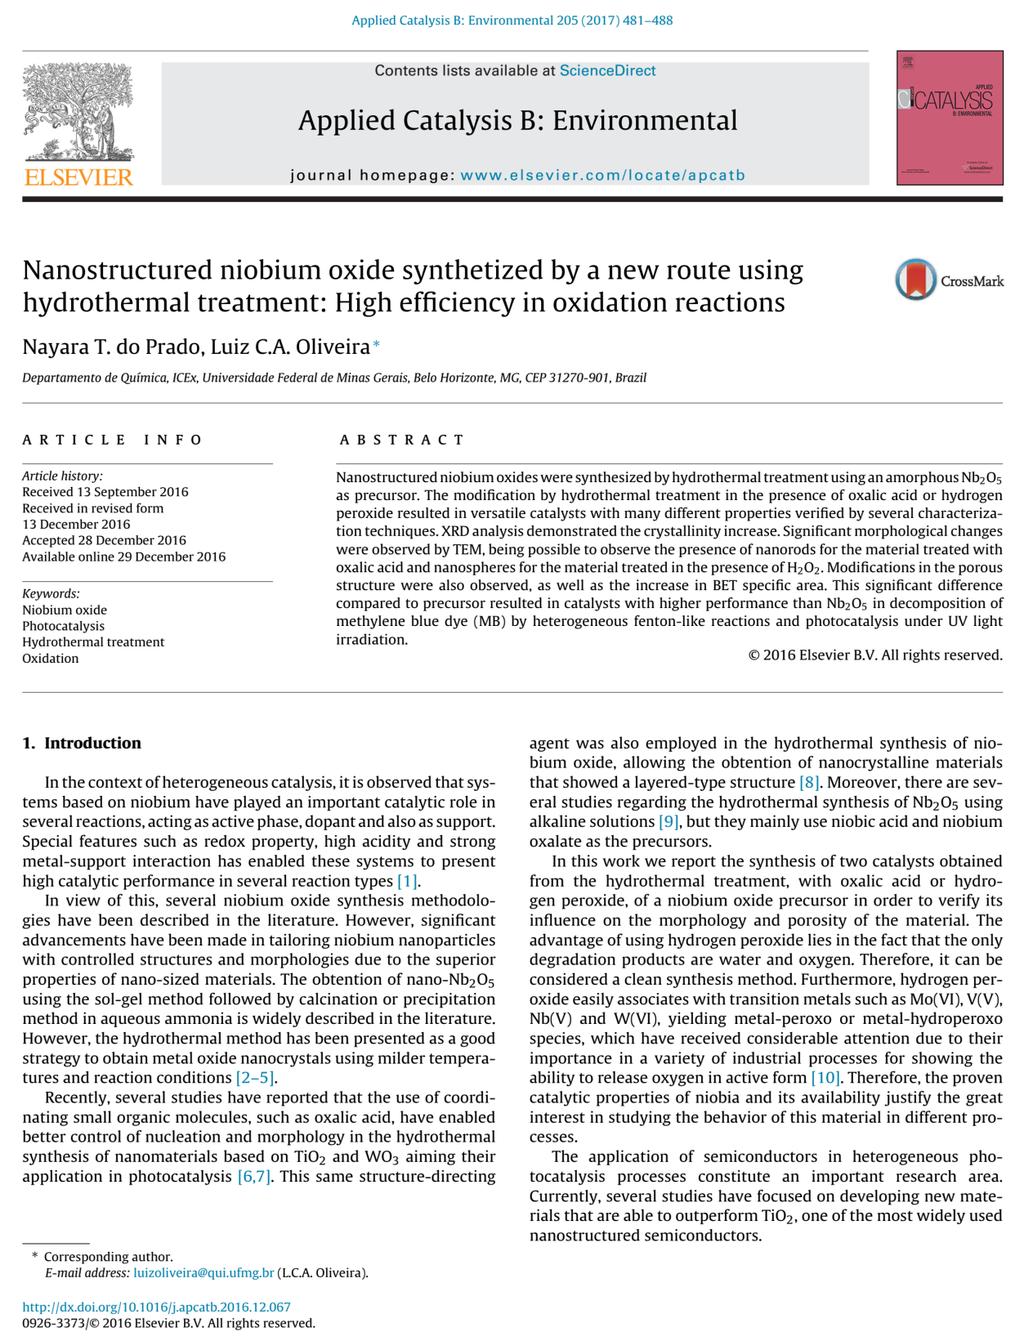 9.2 Artigo Publicado - Nanostructured niobium oxide synthetized by a new